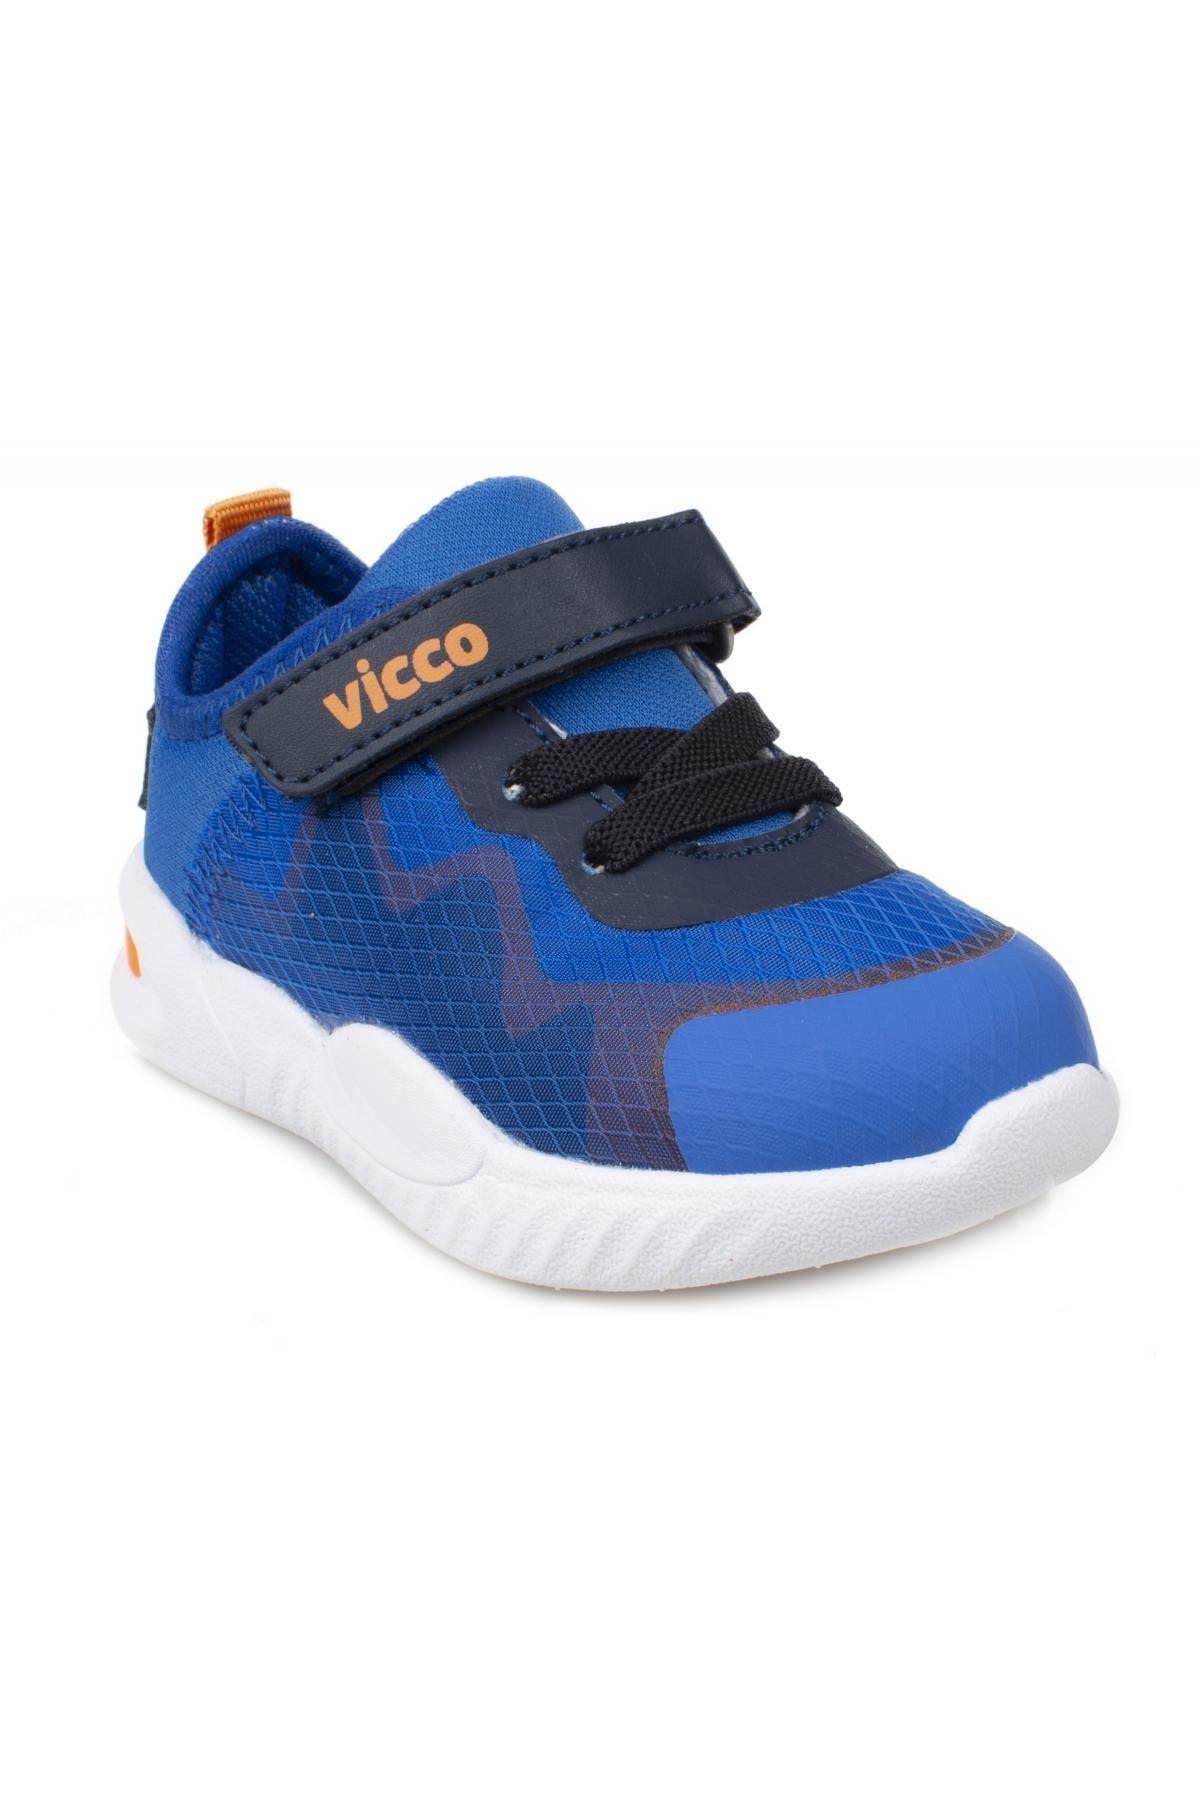 Vicco Çocuk Mavi Spor Ayakkabı